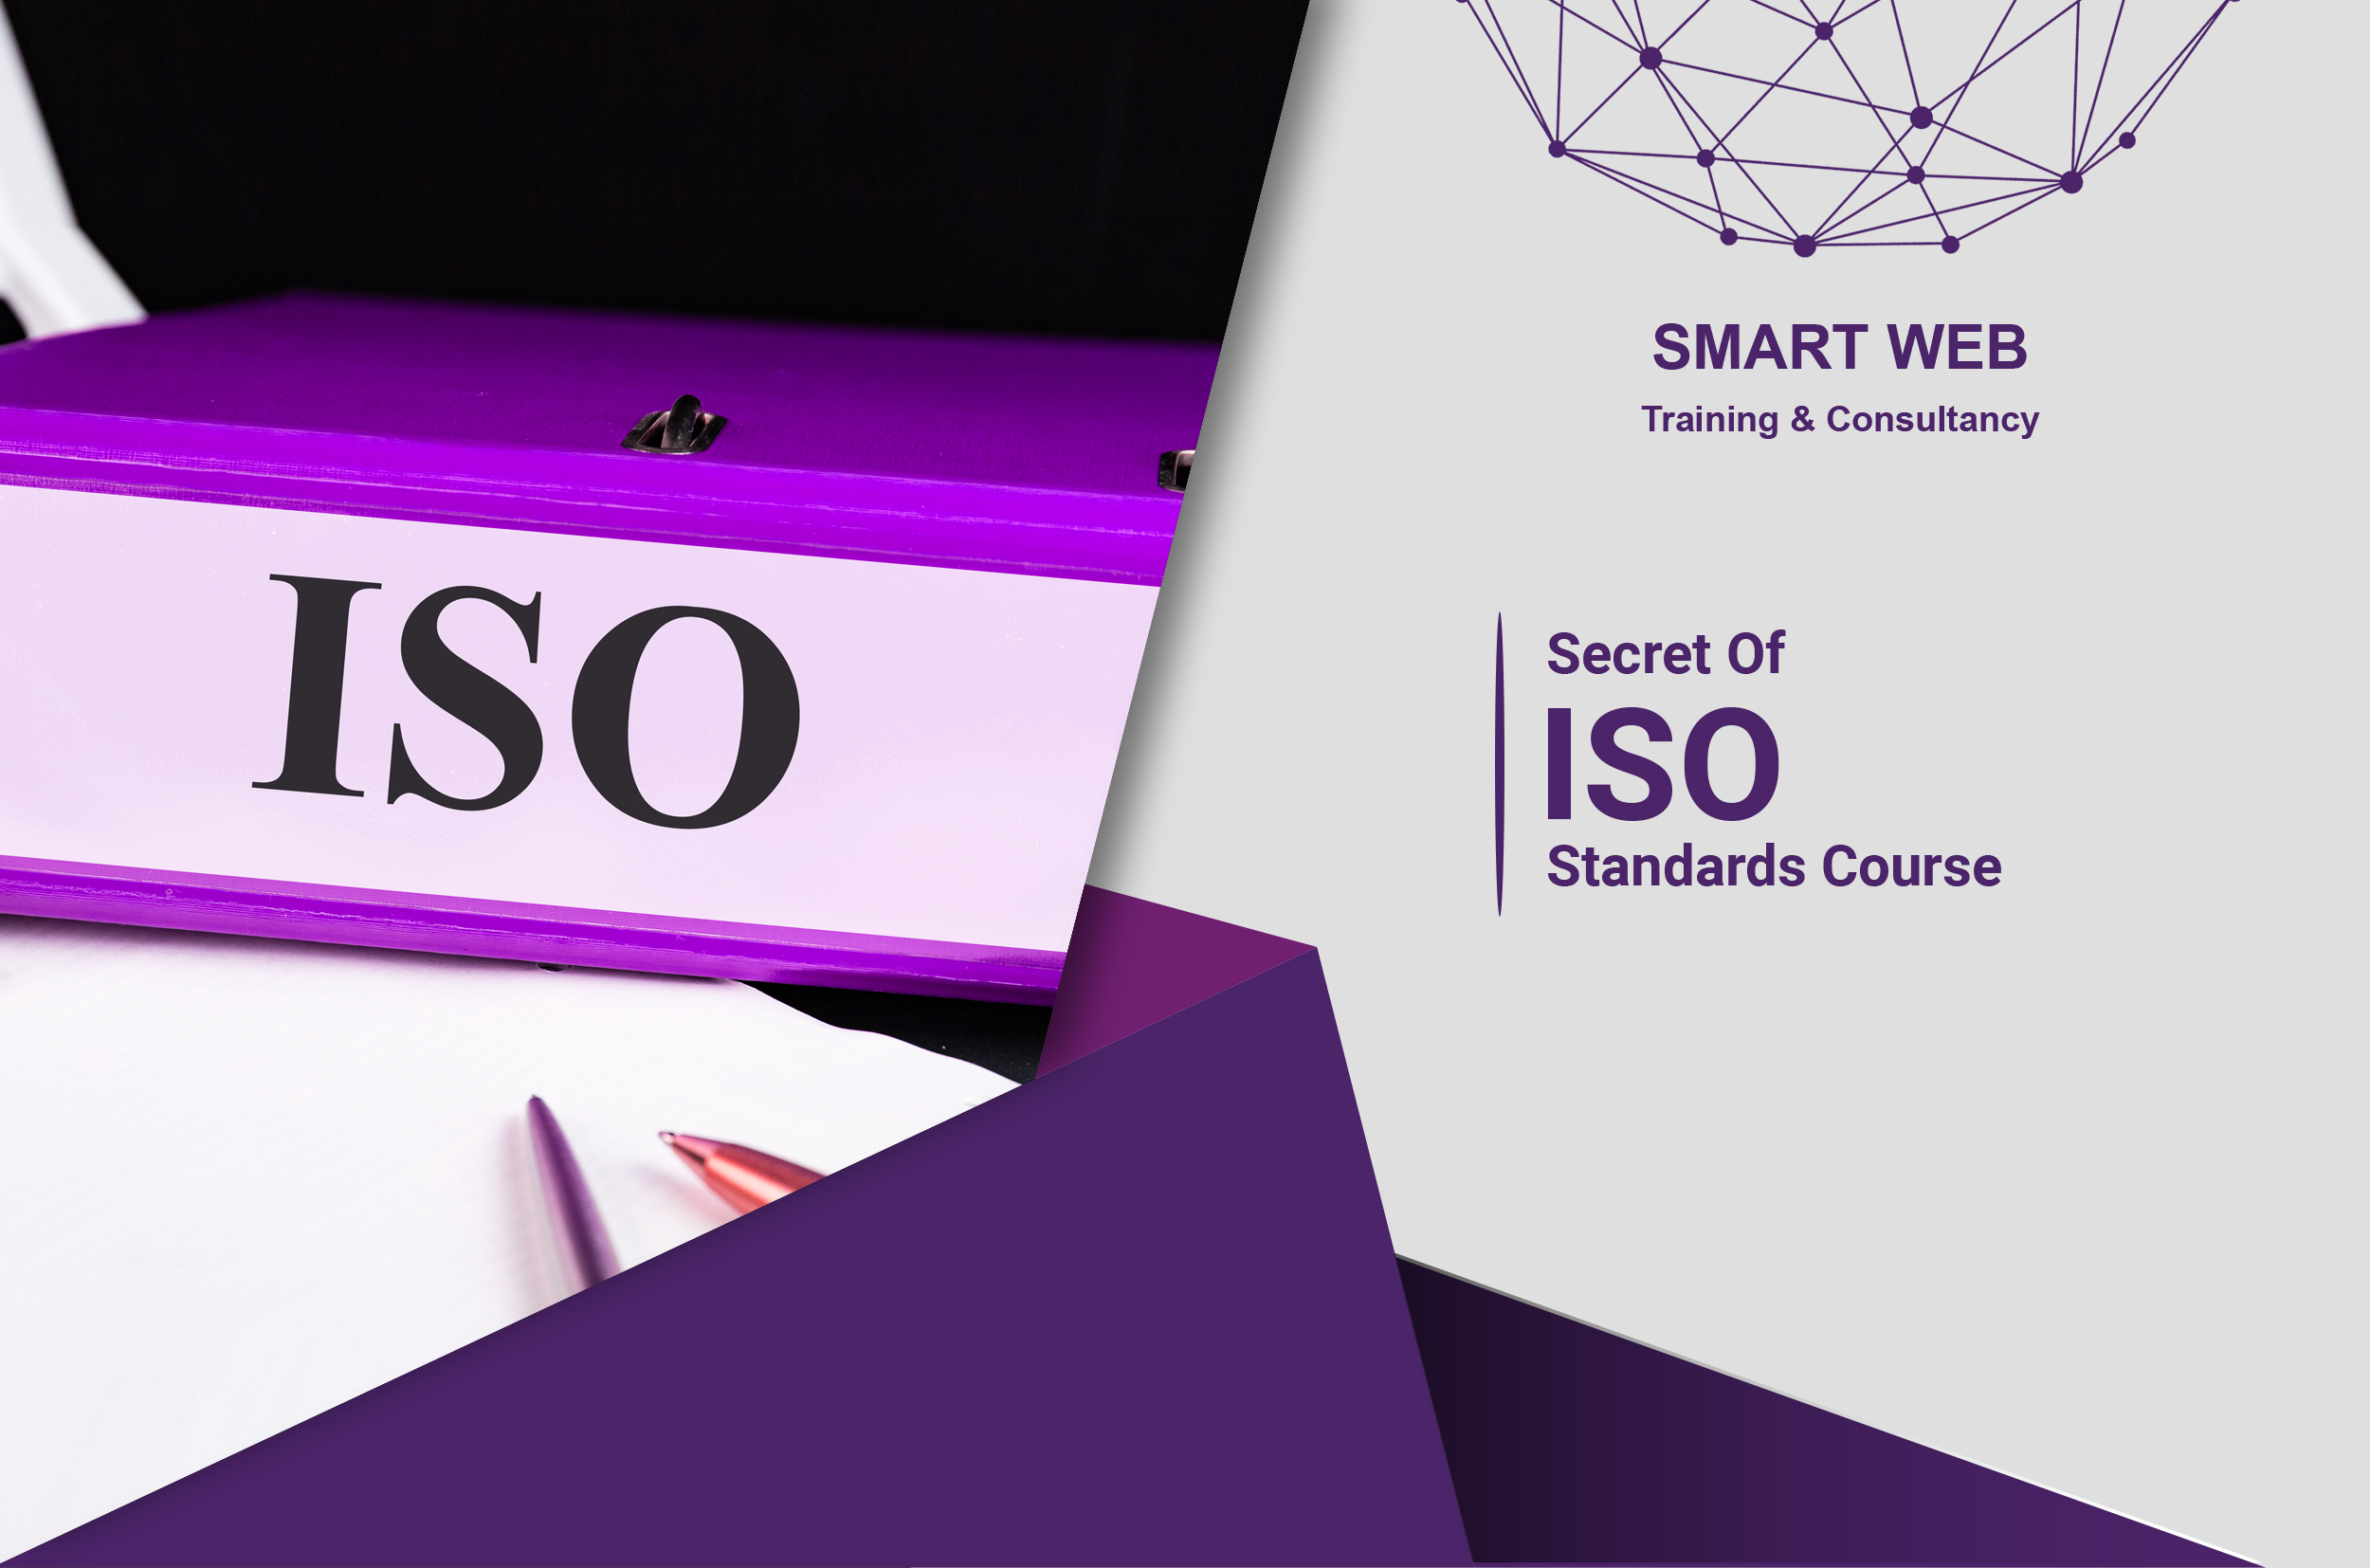 Secret of ISO standards